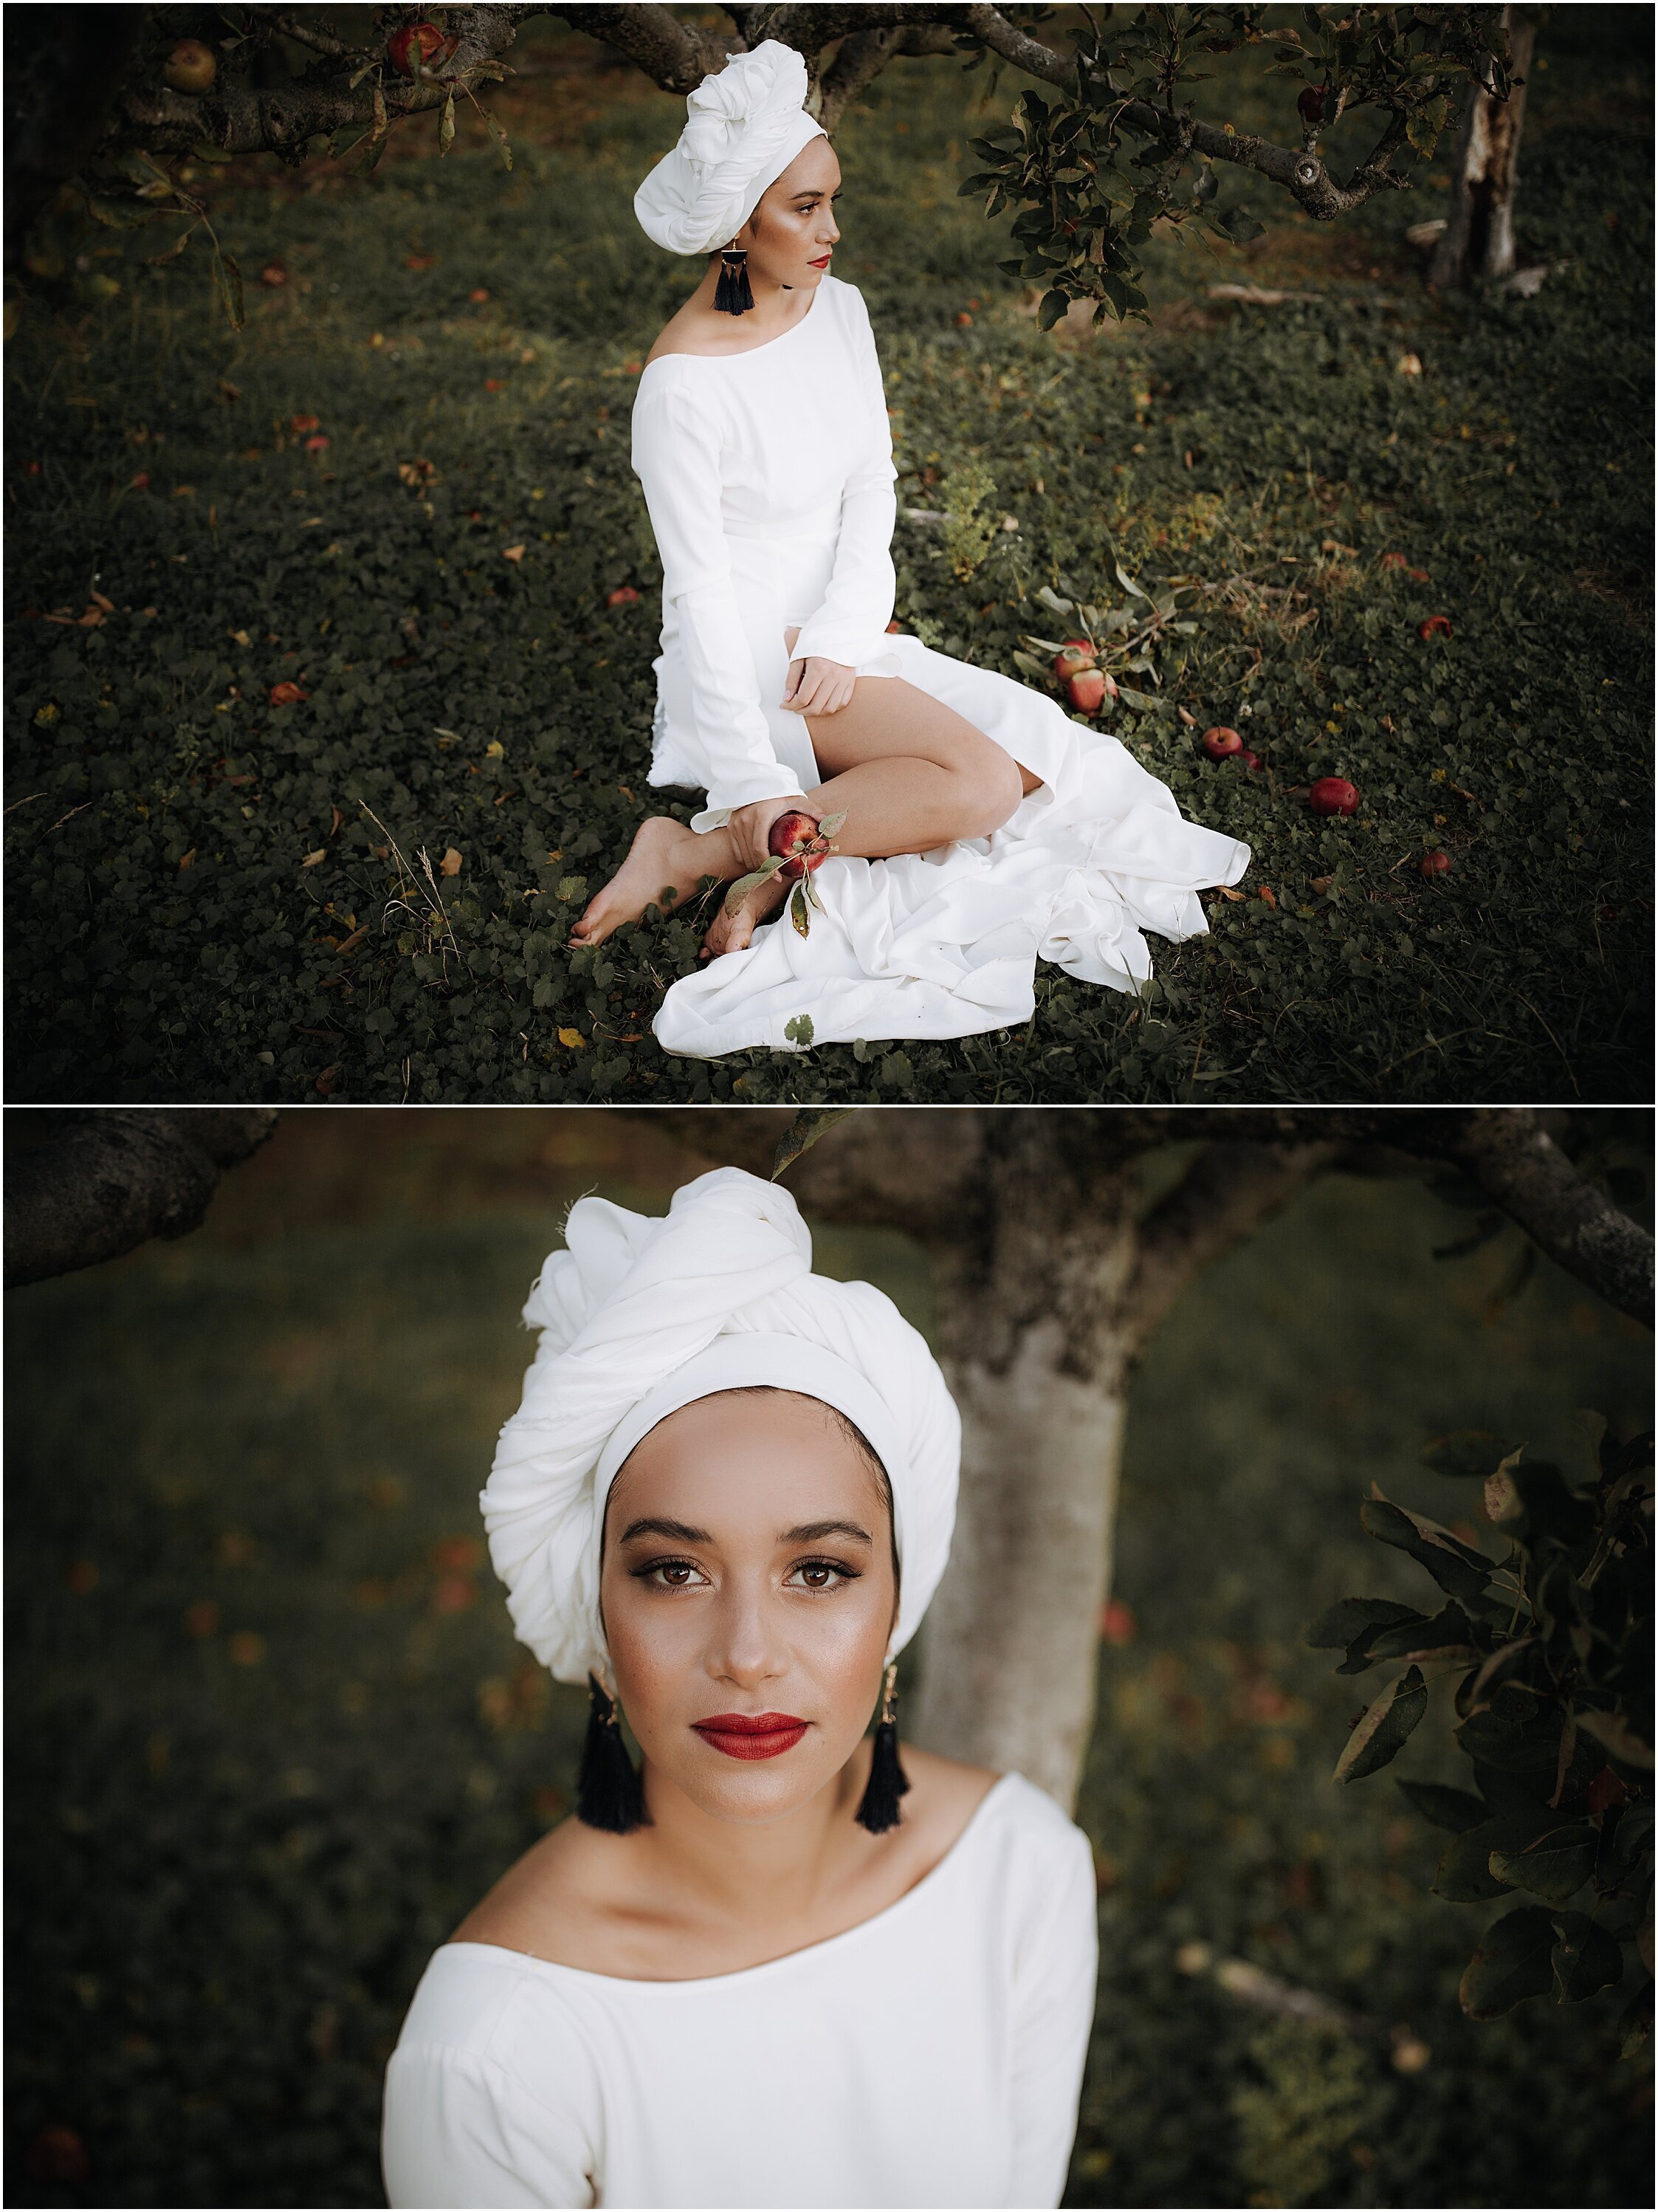 Zanda+Auckland+wedding+photographer+unique+portrait+photoshoot+ideas+autumn+winter+Windmill+apple+orchard+Coatesville+New+Zealand_27.jpeg